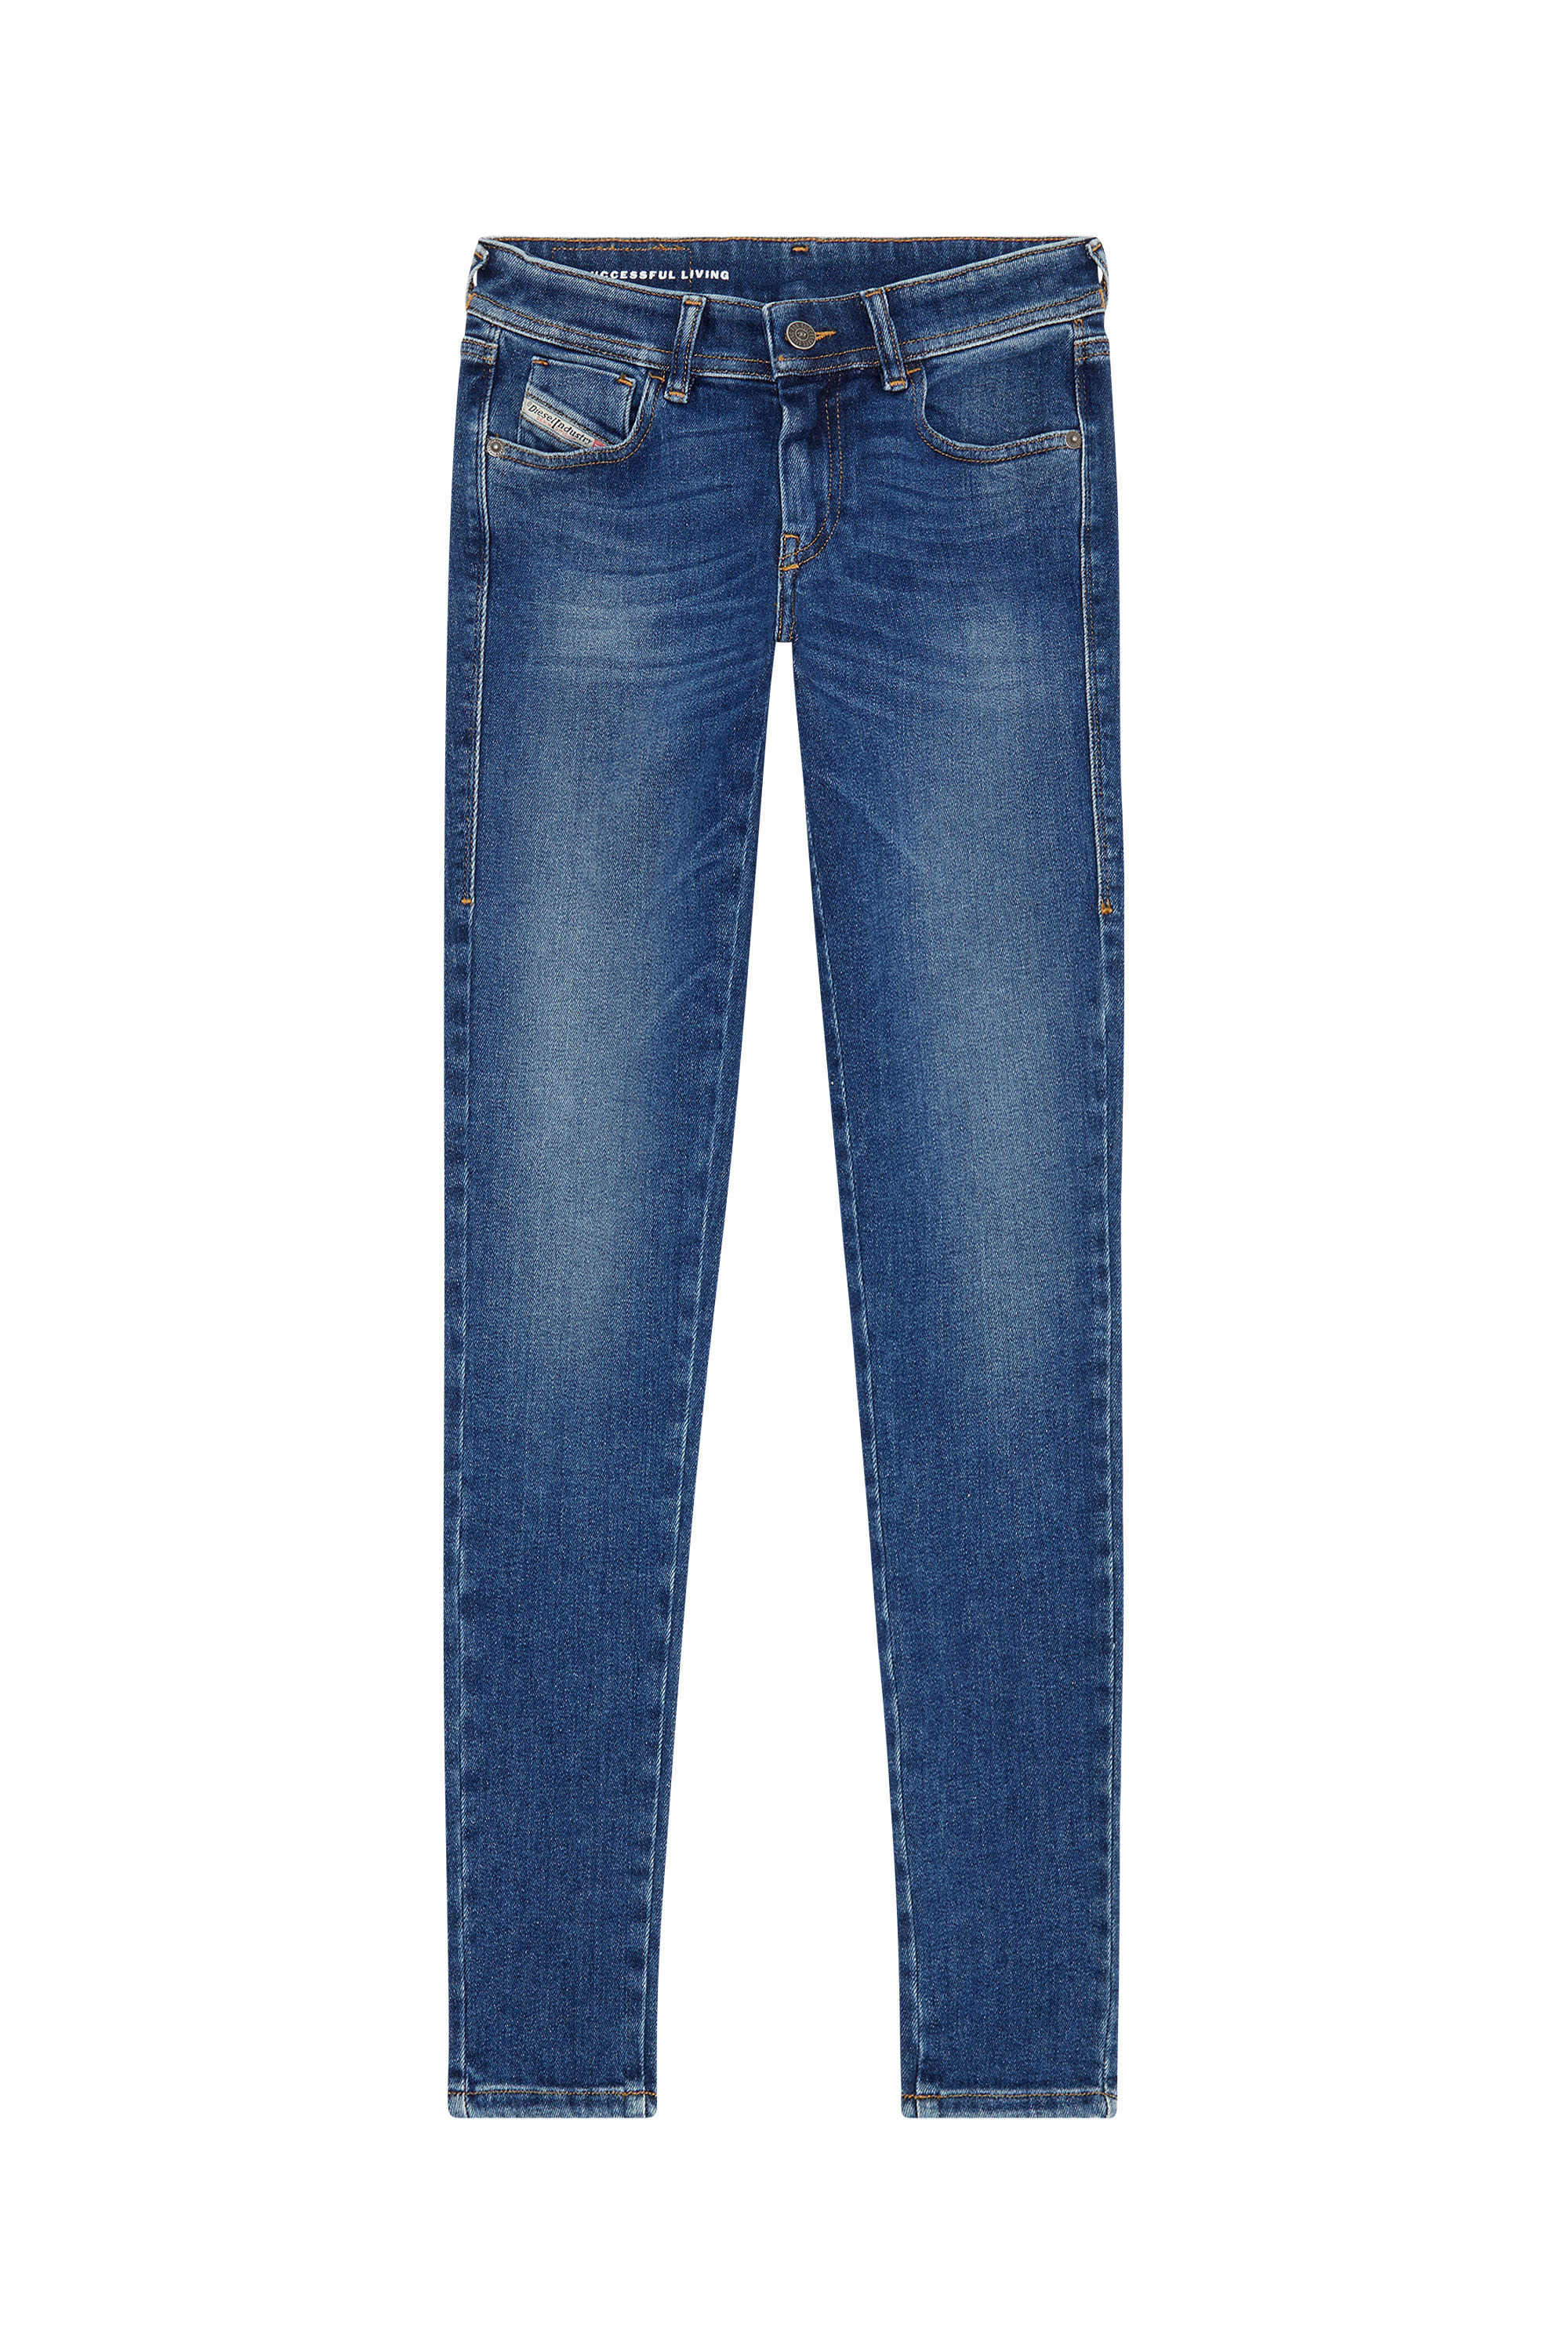 Diesel - Super skinny Jeans 2018 Slandy-Low 09F86, Medium blue - Image 5